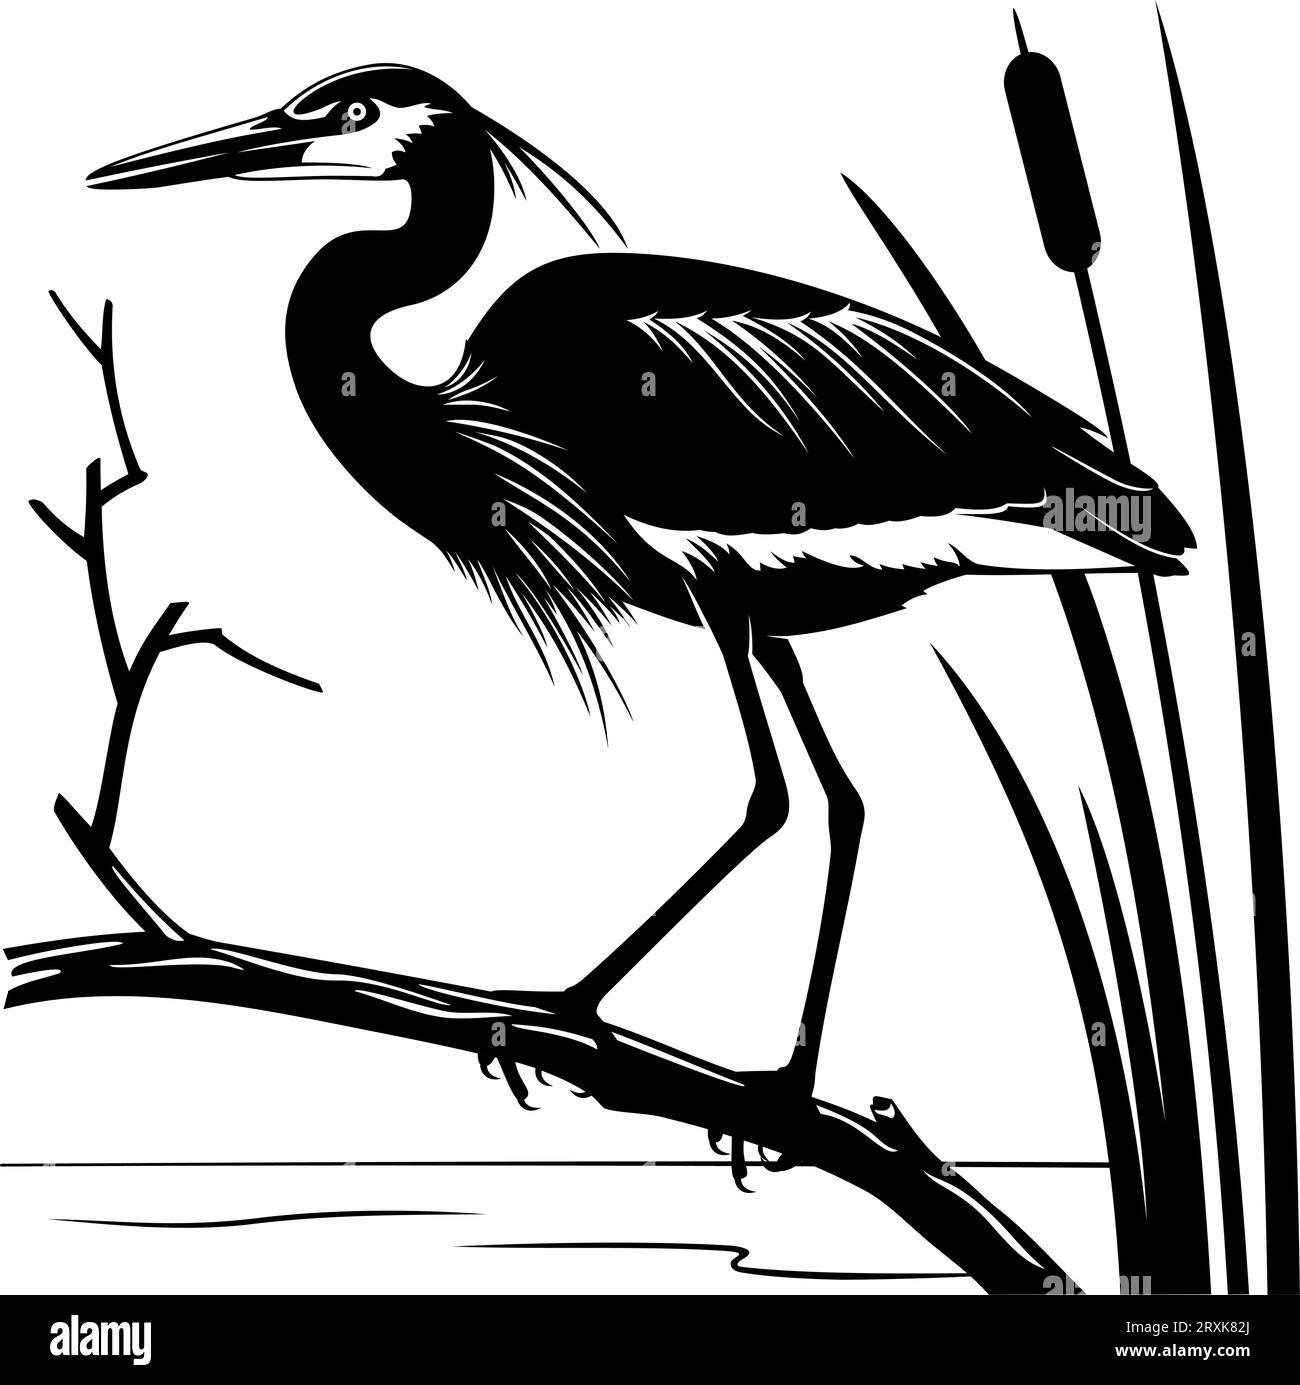 Silhouette eines Herons, der auf einem Ast steht. Schwarz-weiß-Schablonenvektorillustration. Vogel, Ast, Schilf und Wasser sind separate Objekte. Stock Vektor